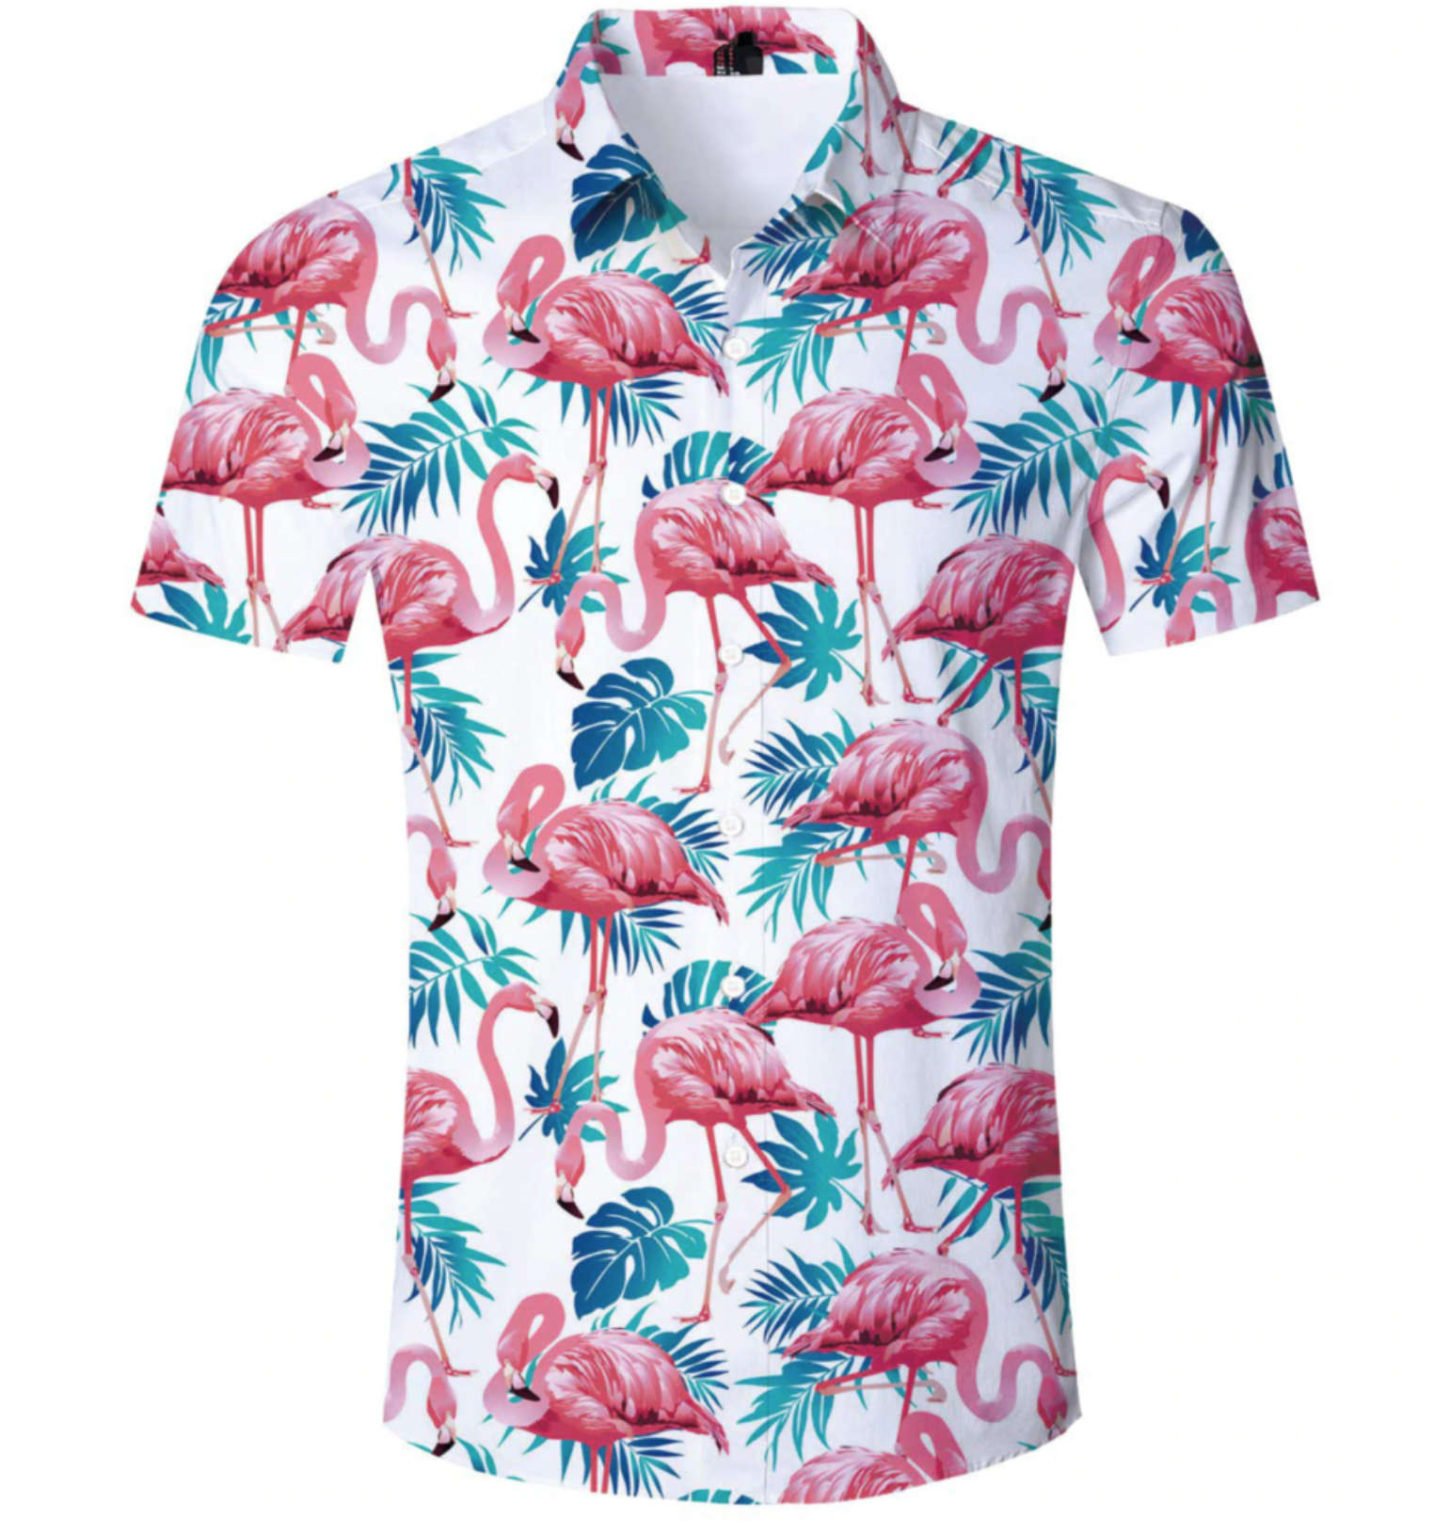 flamingo shop clothing reviews